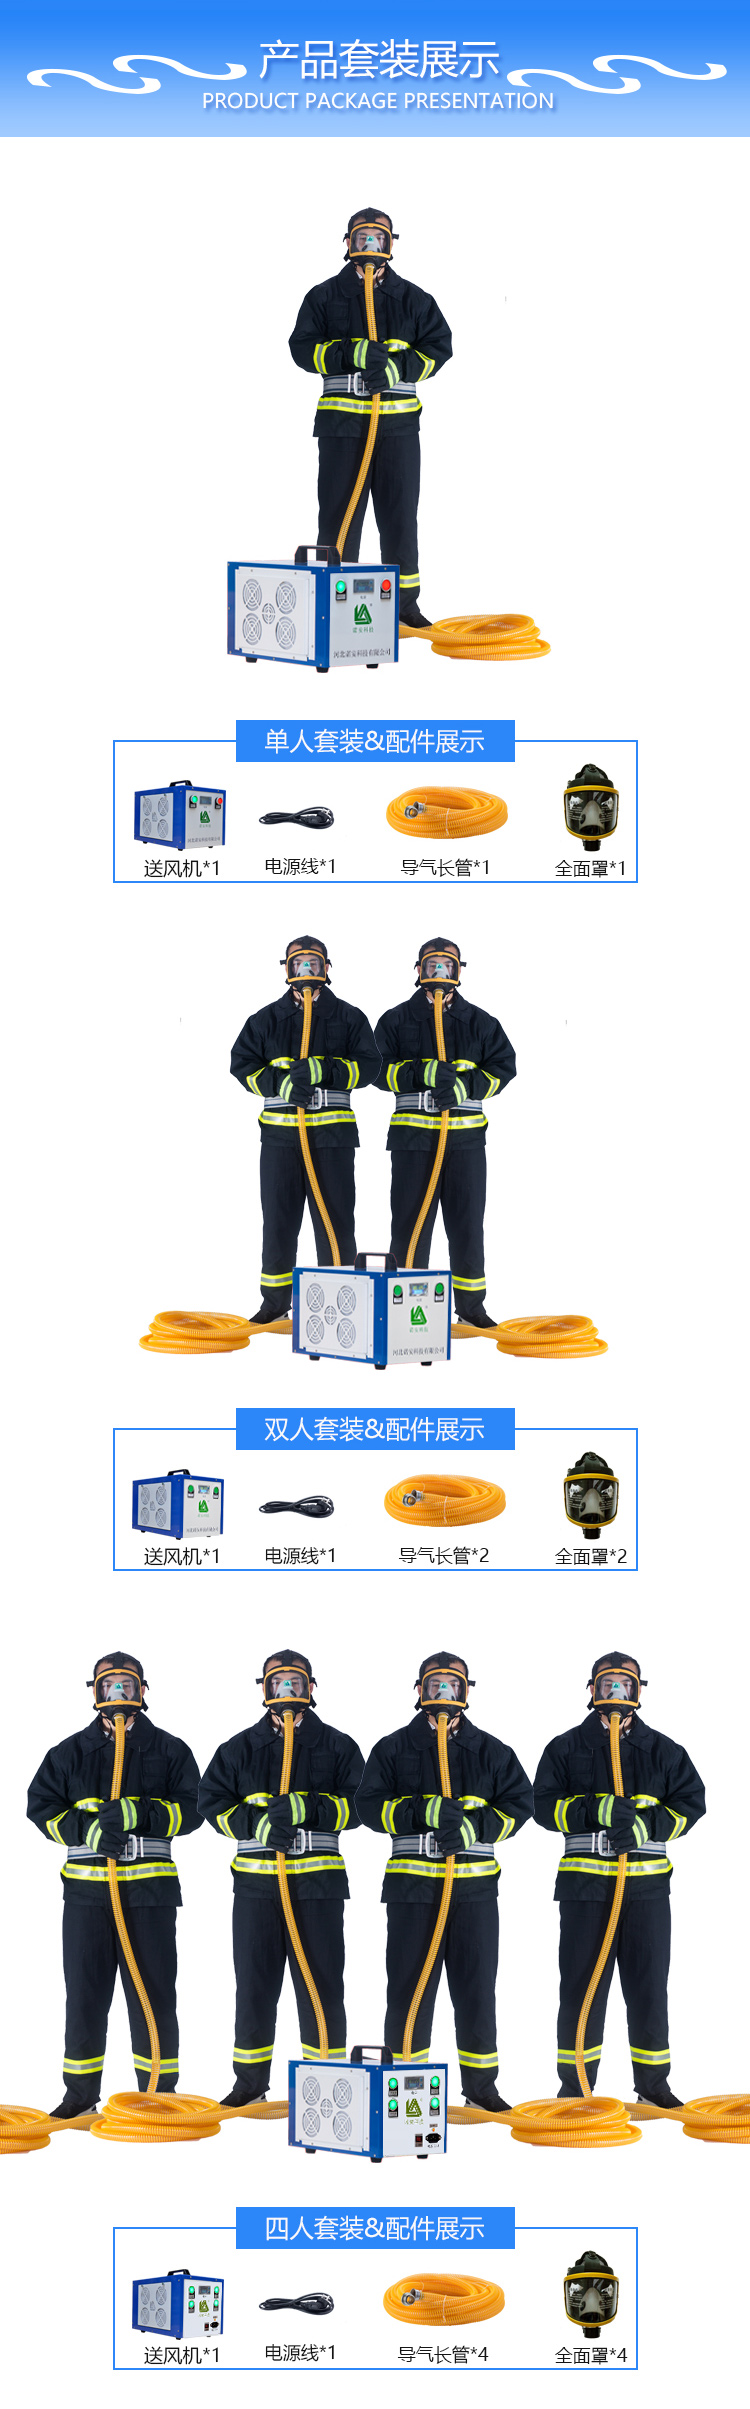 上海皓驹厂家直销NA-4送风式长管空气呼吸器 电动送风式长管呼吸器 四人电动送风呼吸器 移动长管呼吸器示例图4